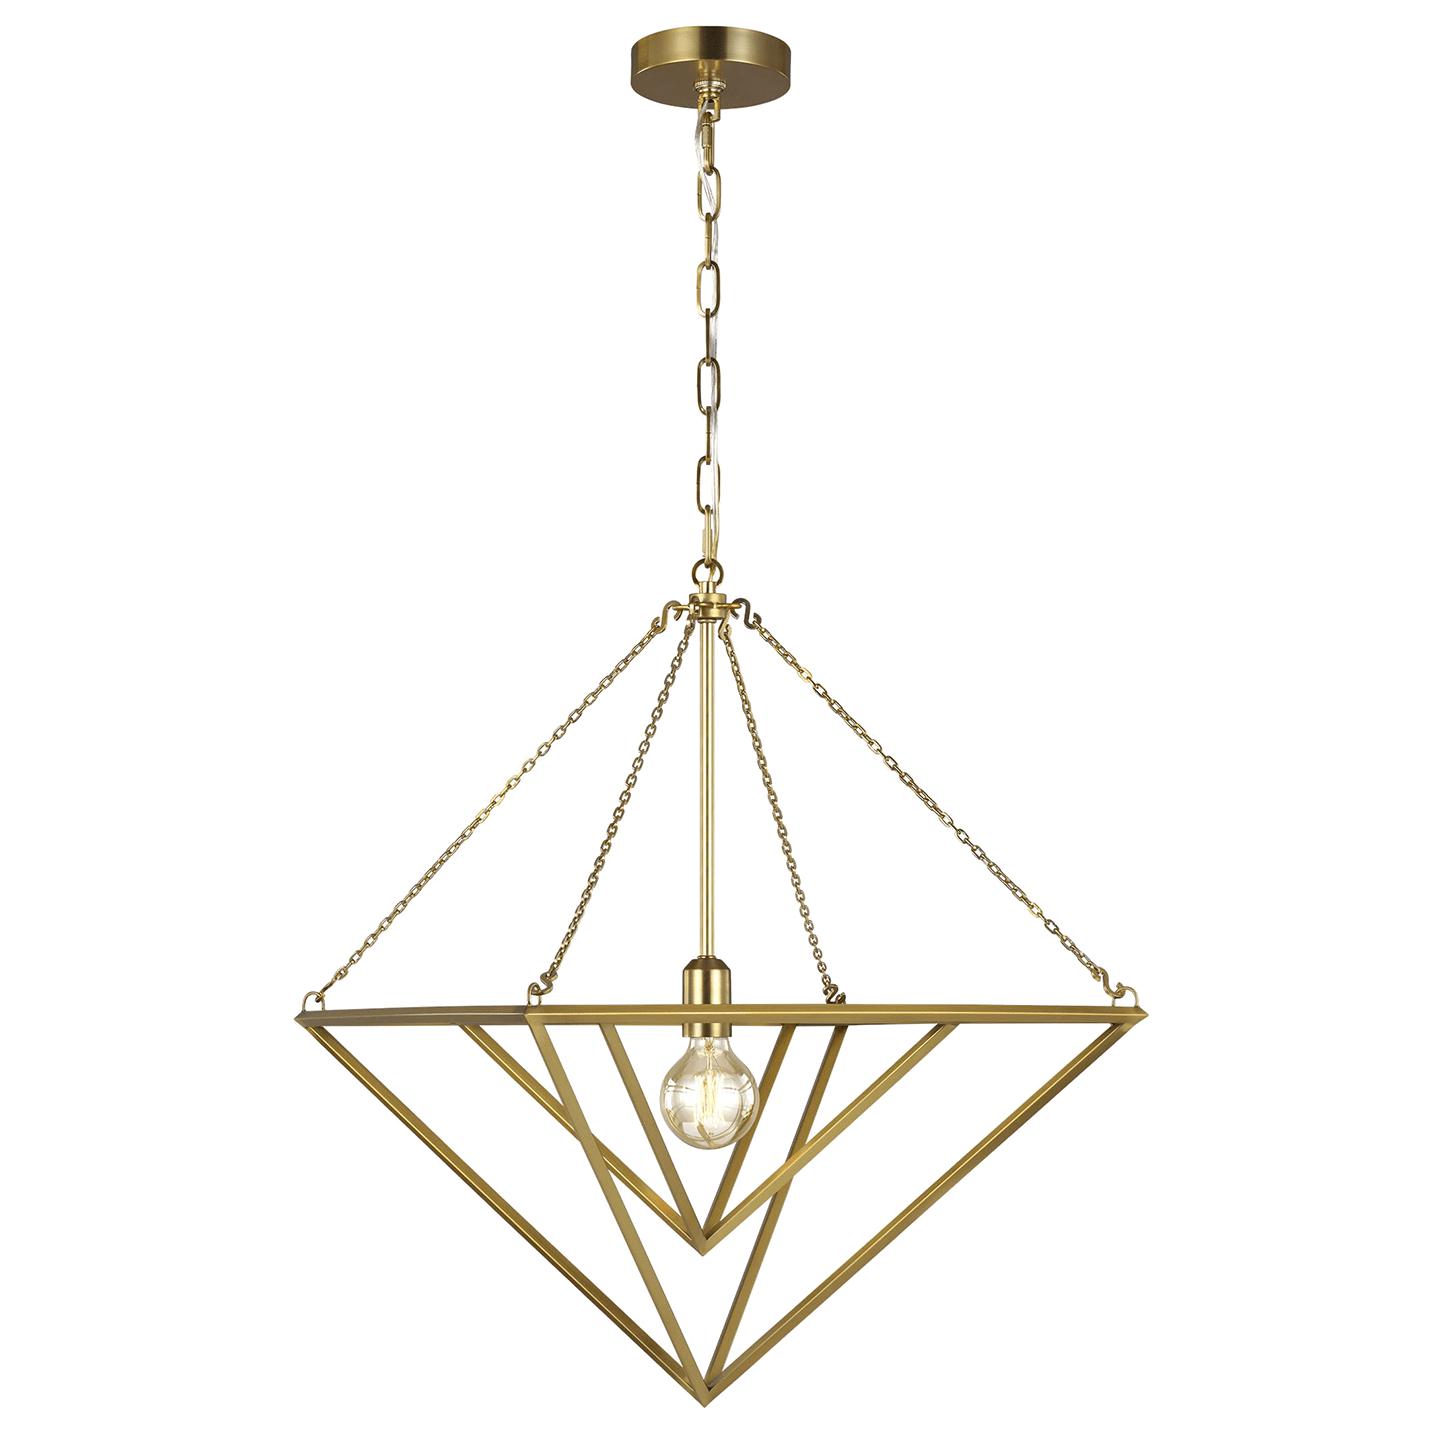 Купить Подвесной светильник Carat Medium Pendant в интернет-магазине roooms.ru